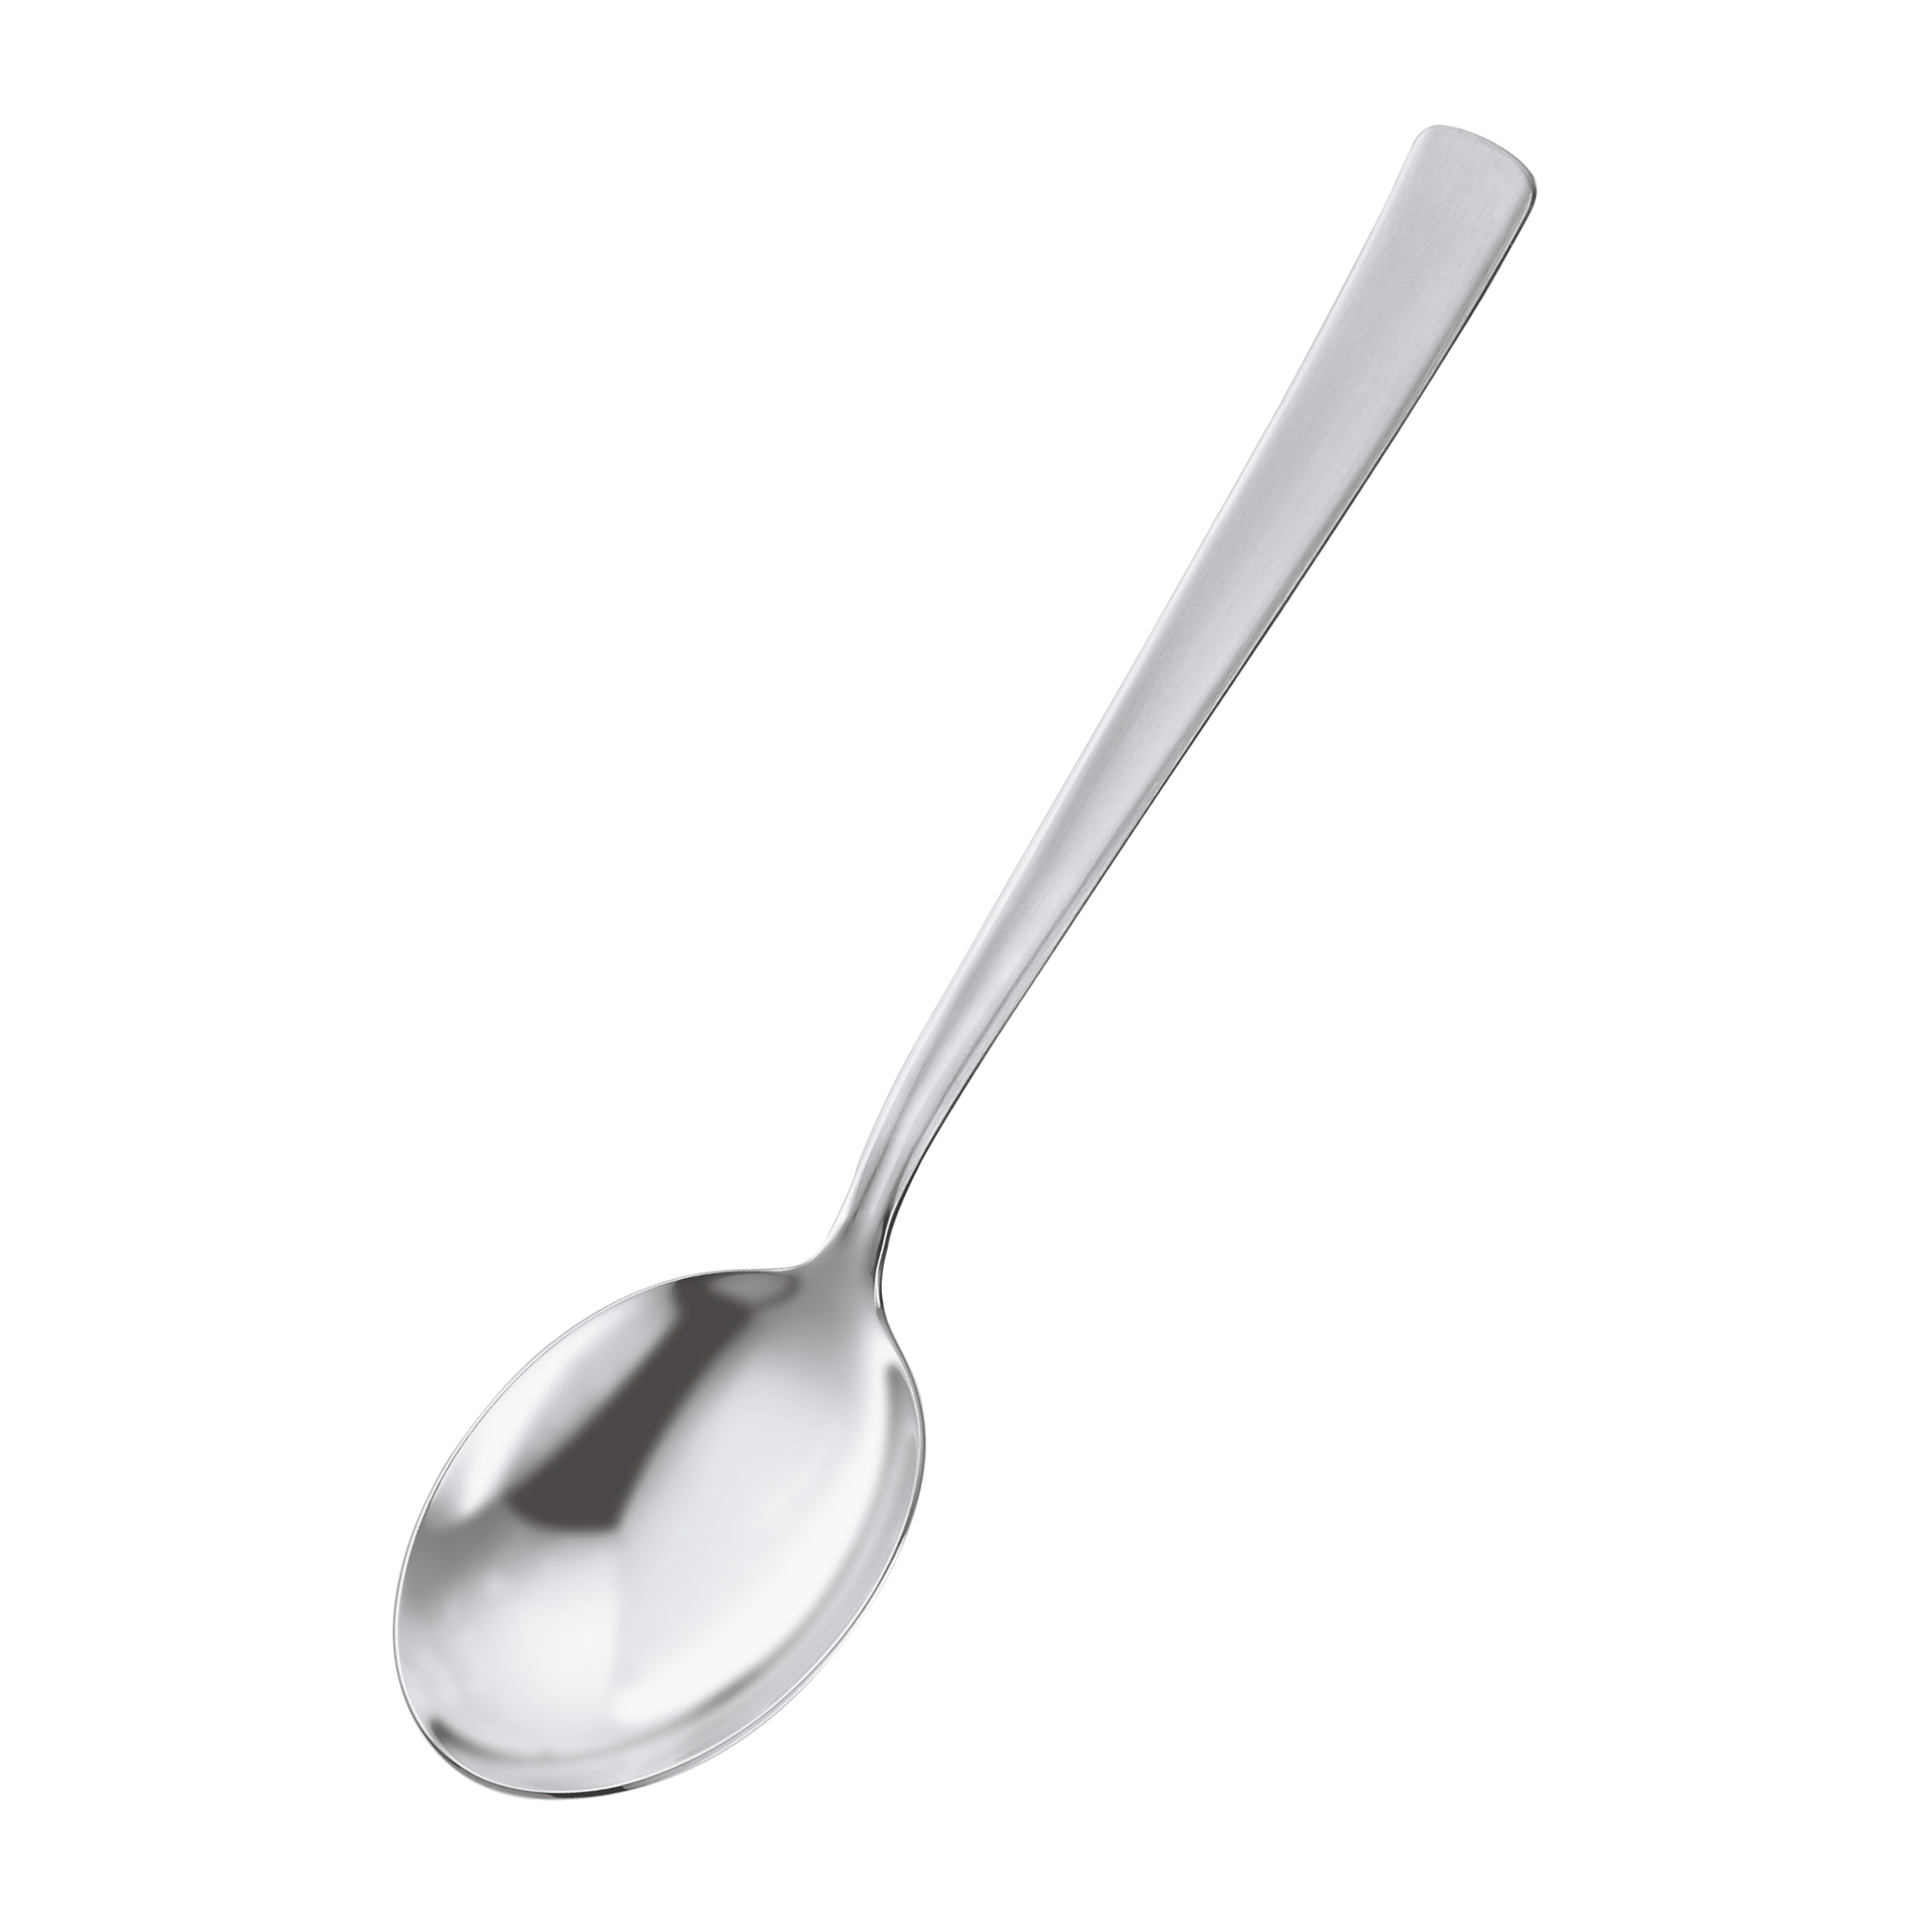 VS 600 Vegetable Spoon